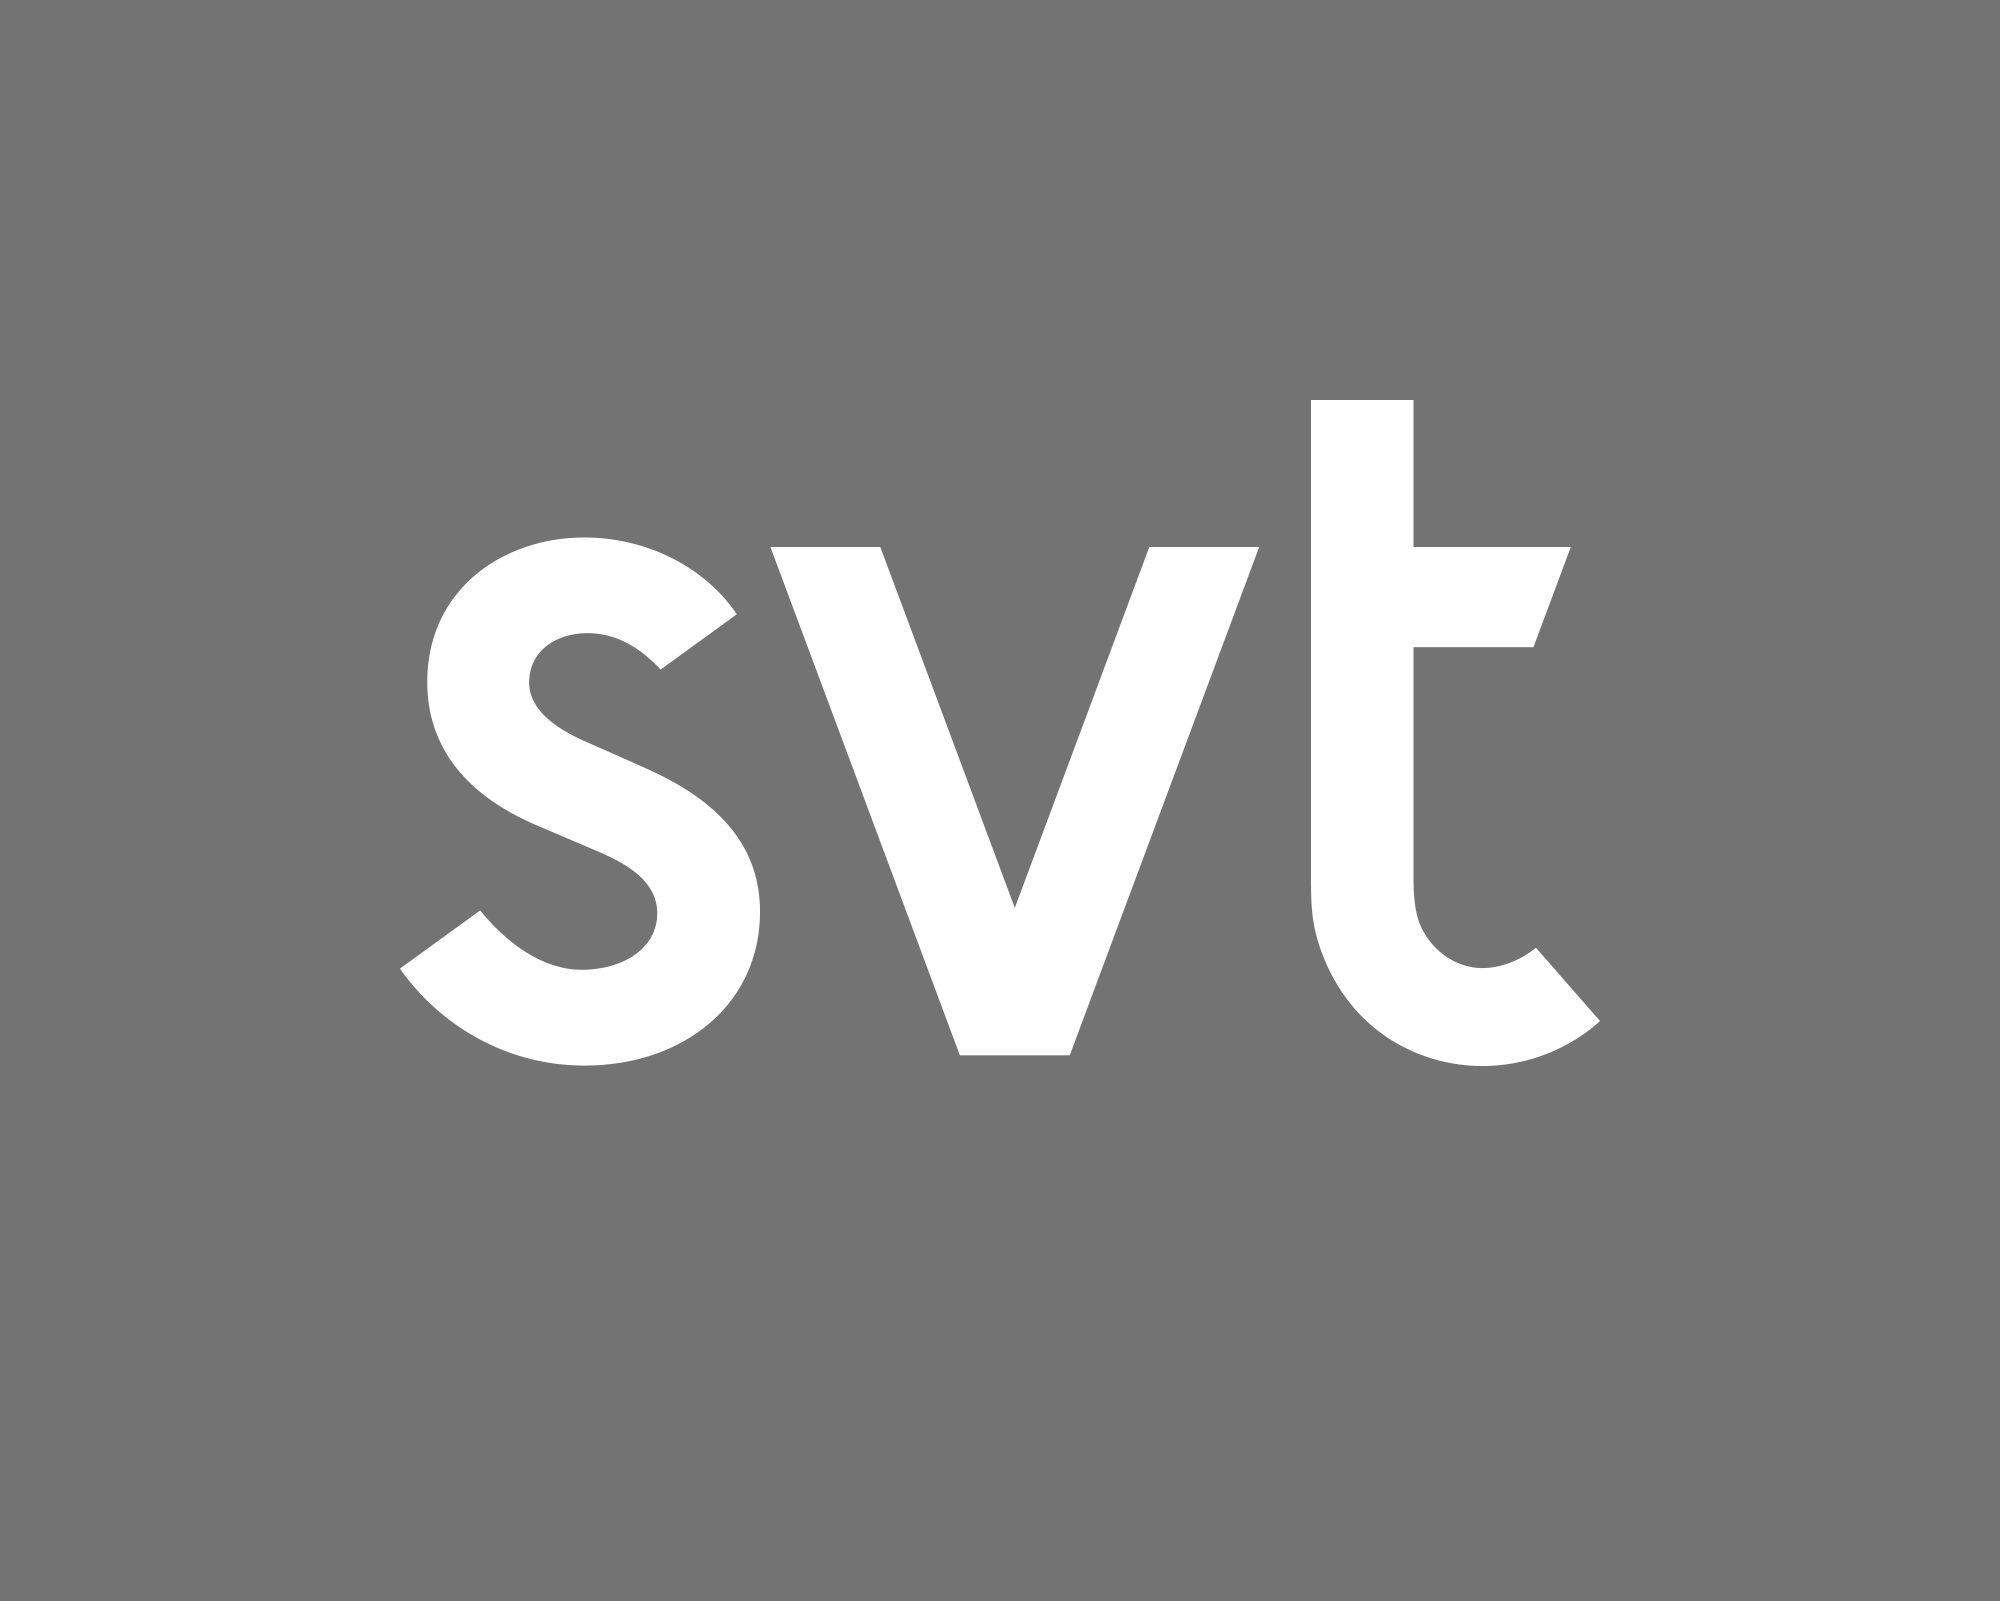 SVT Logo - SVT Styleguide